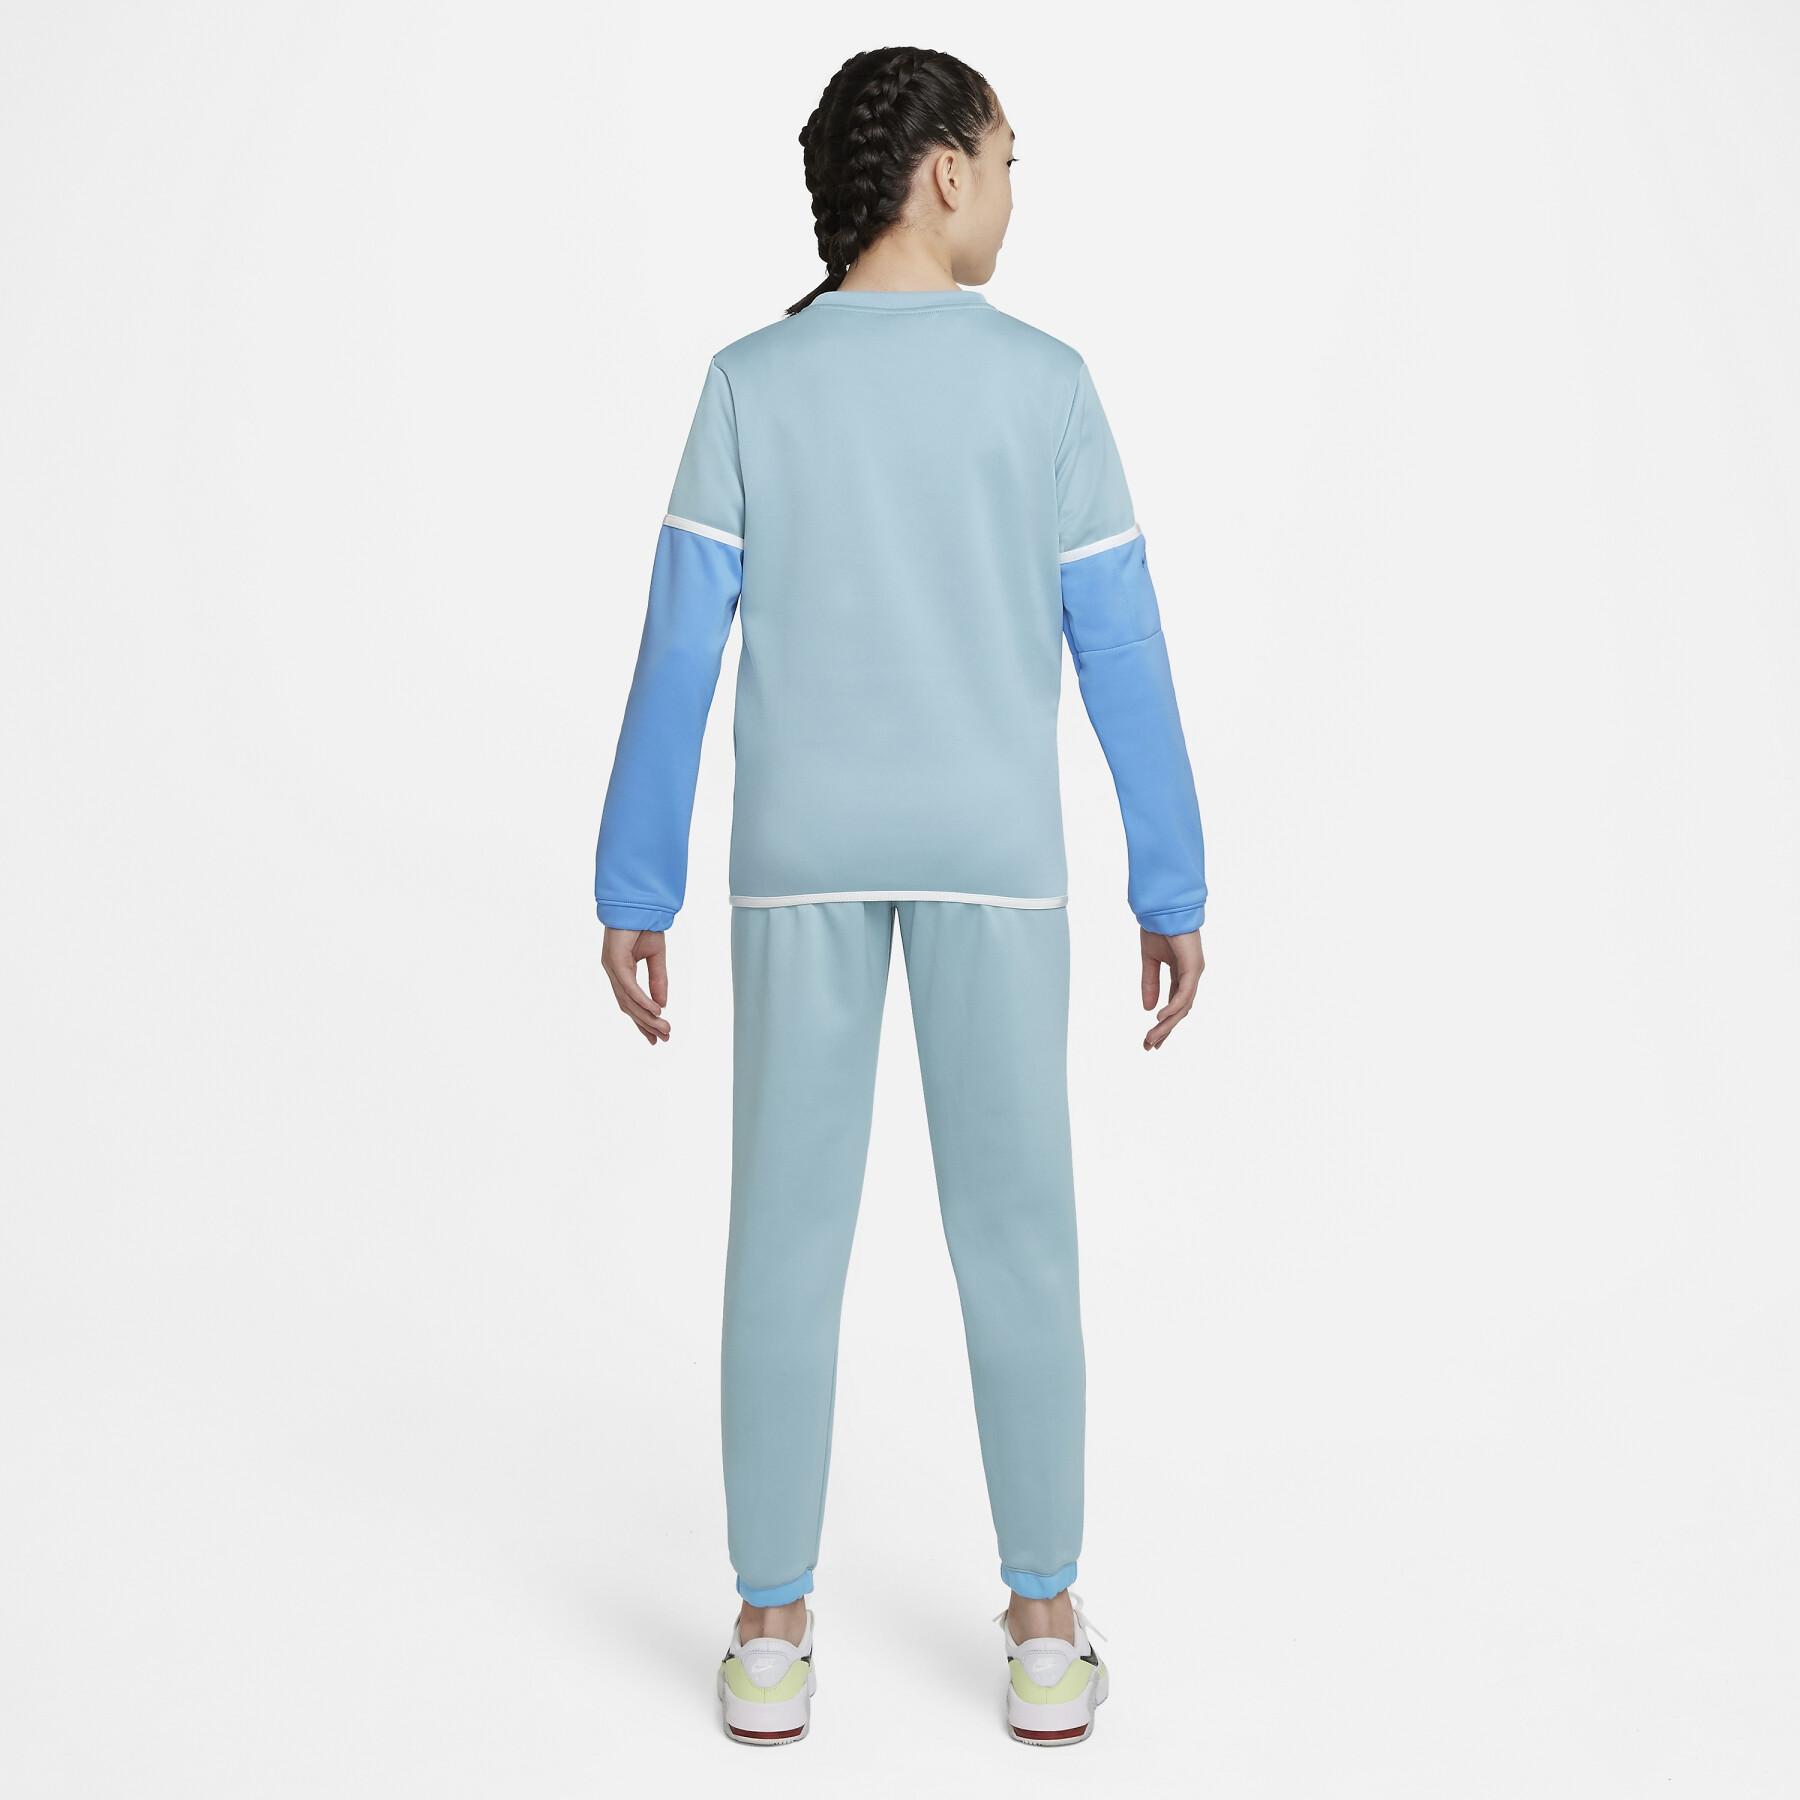 Camisola para crianças Nike K Futura